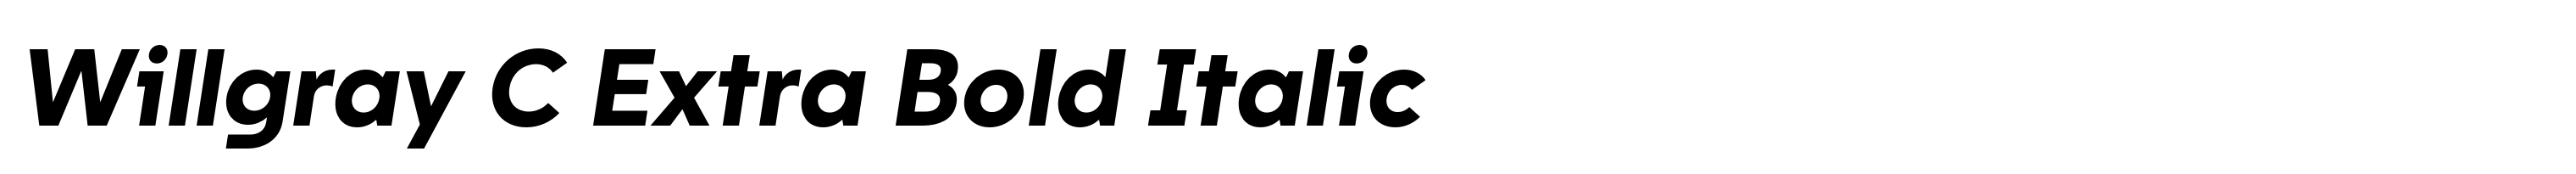 Willgray C Extra Bold Italic